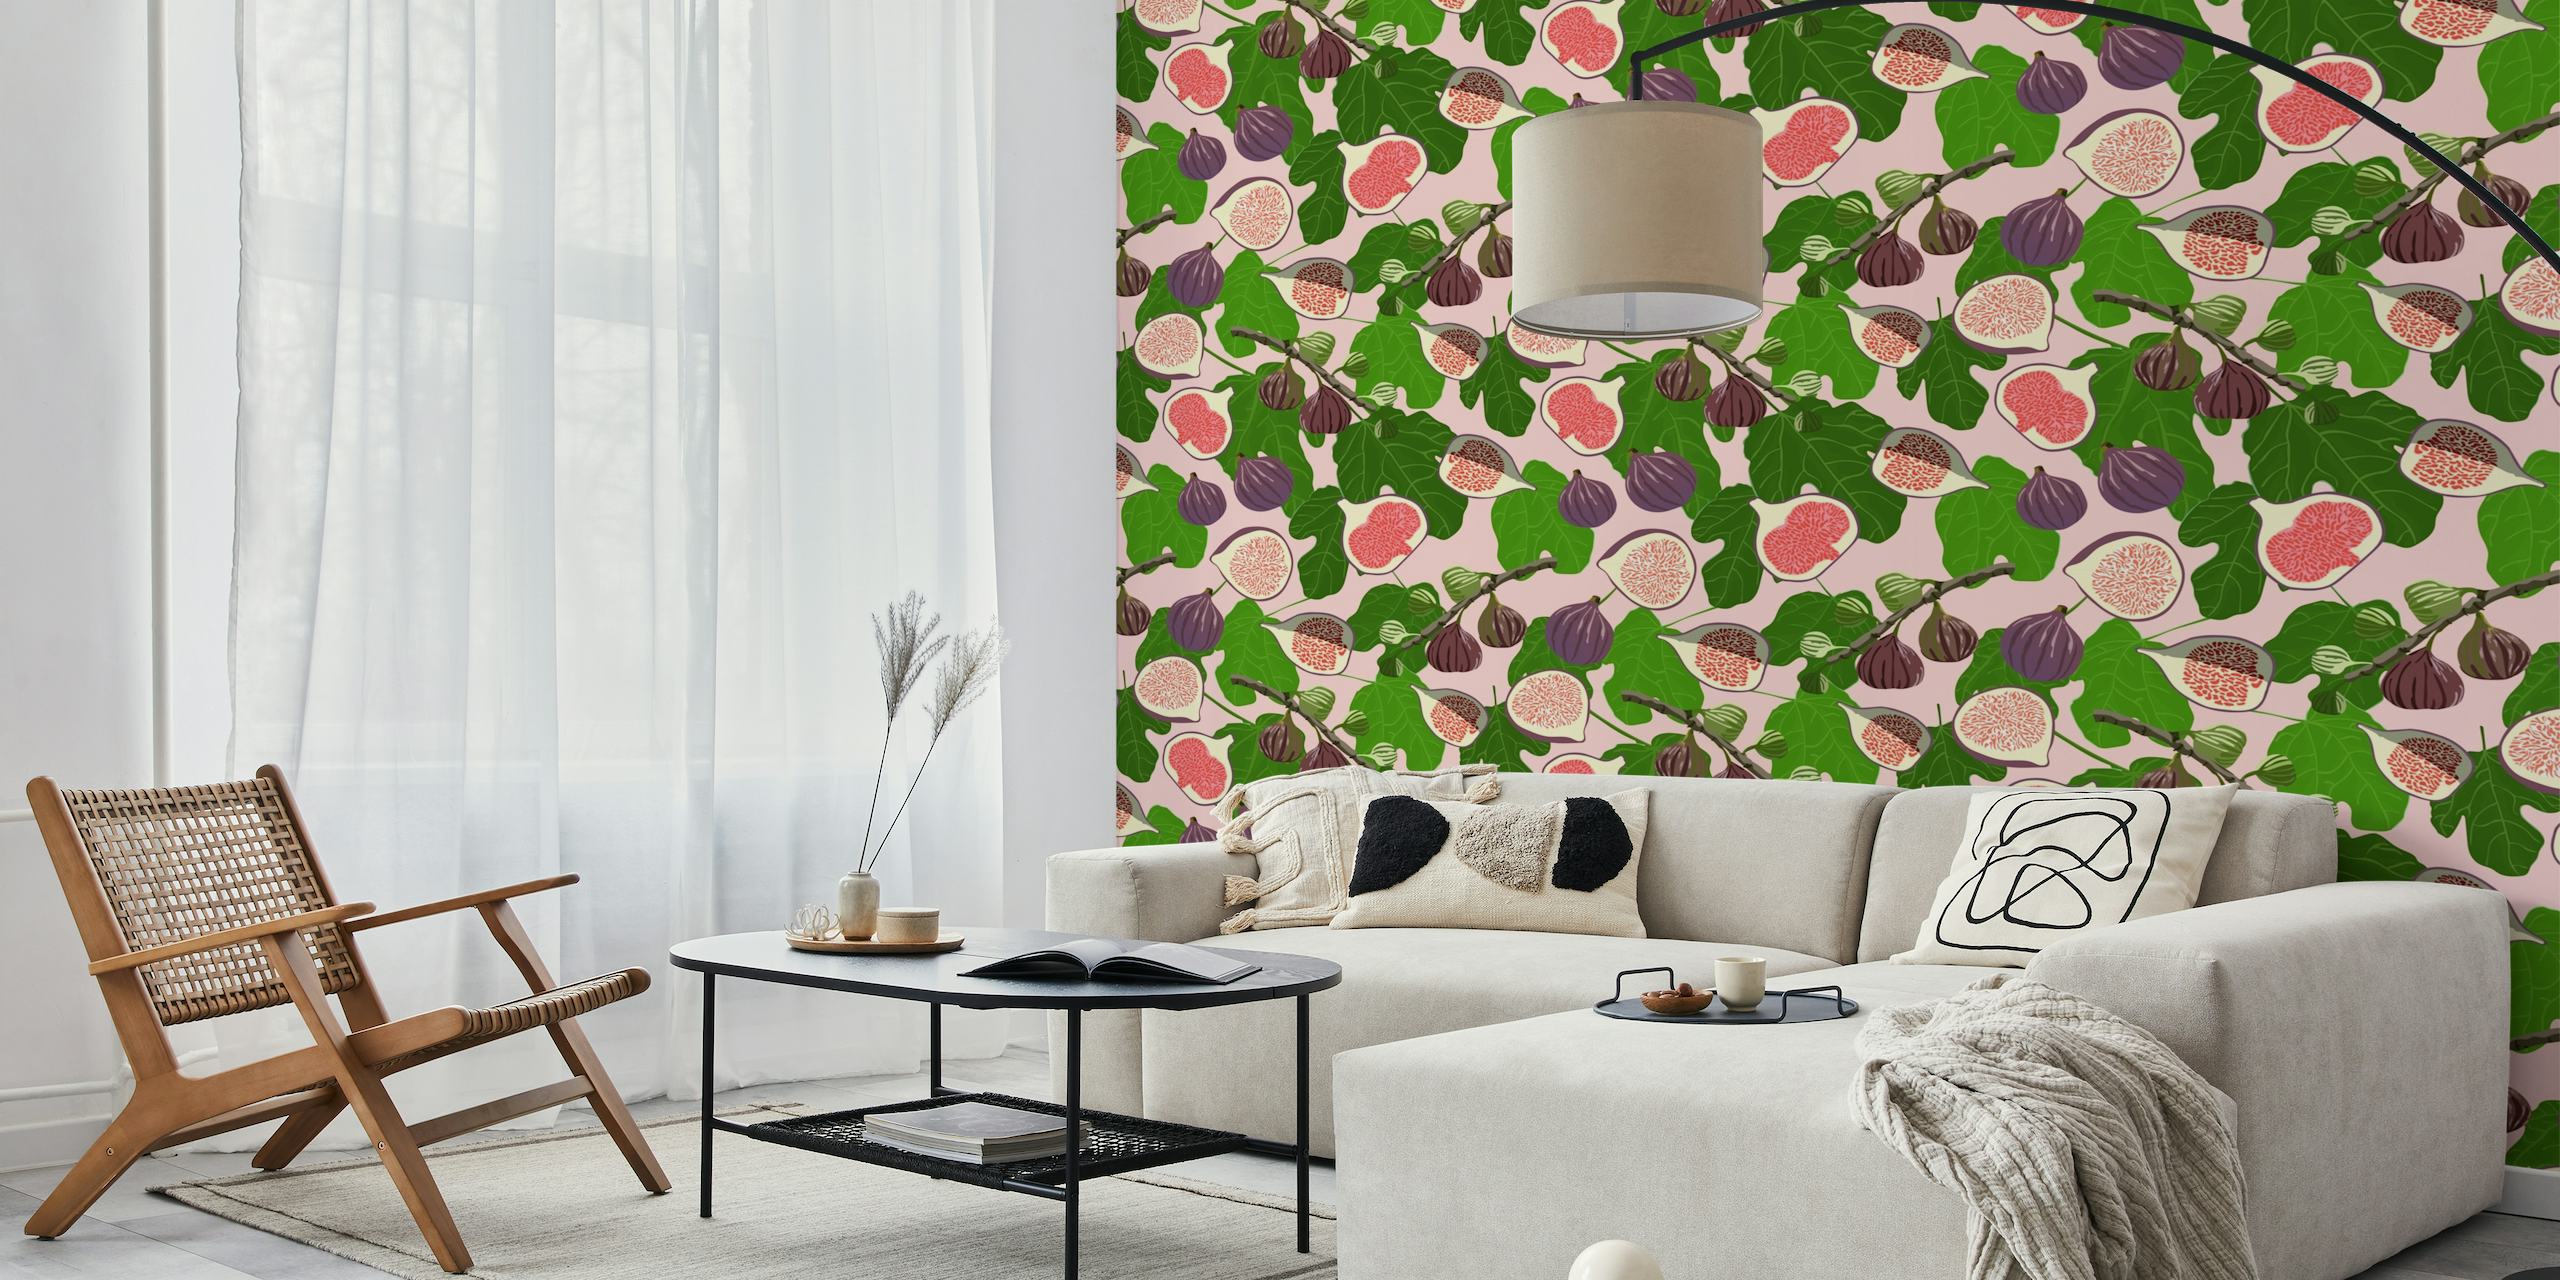 Luminoso y atractivo mural de pared 'Higos y hojas' con higos rosas y morados en medio de un patrón de follaje verde